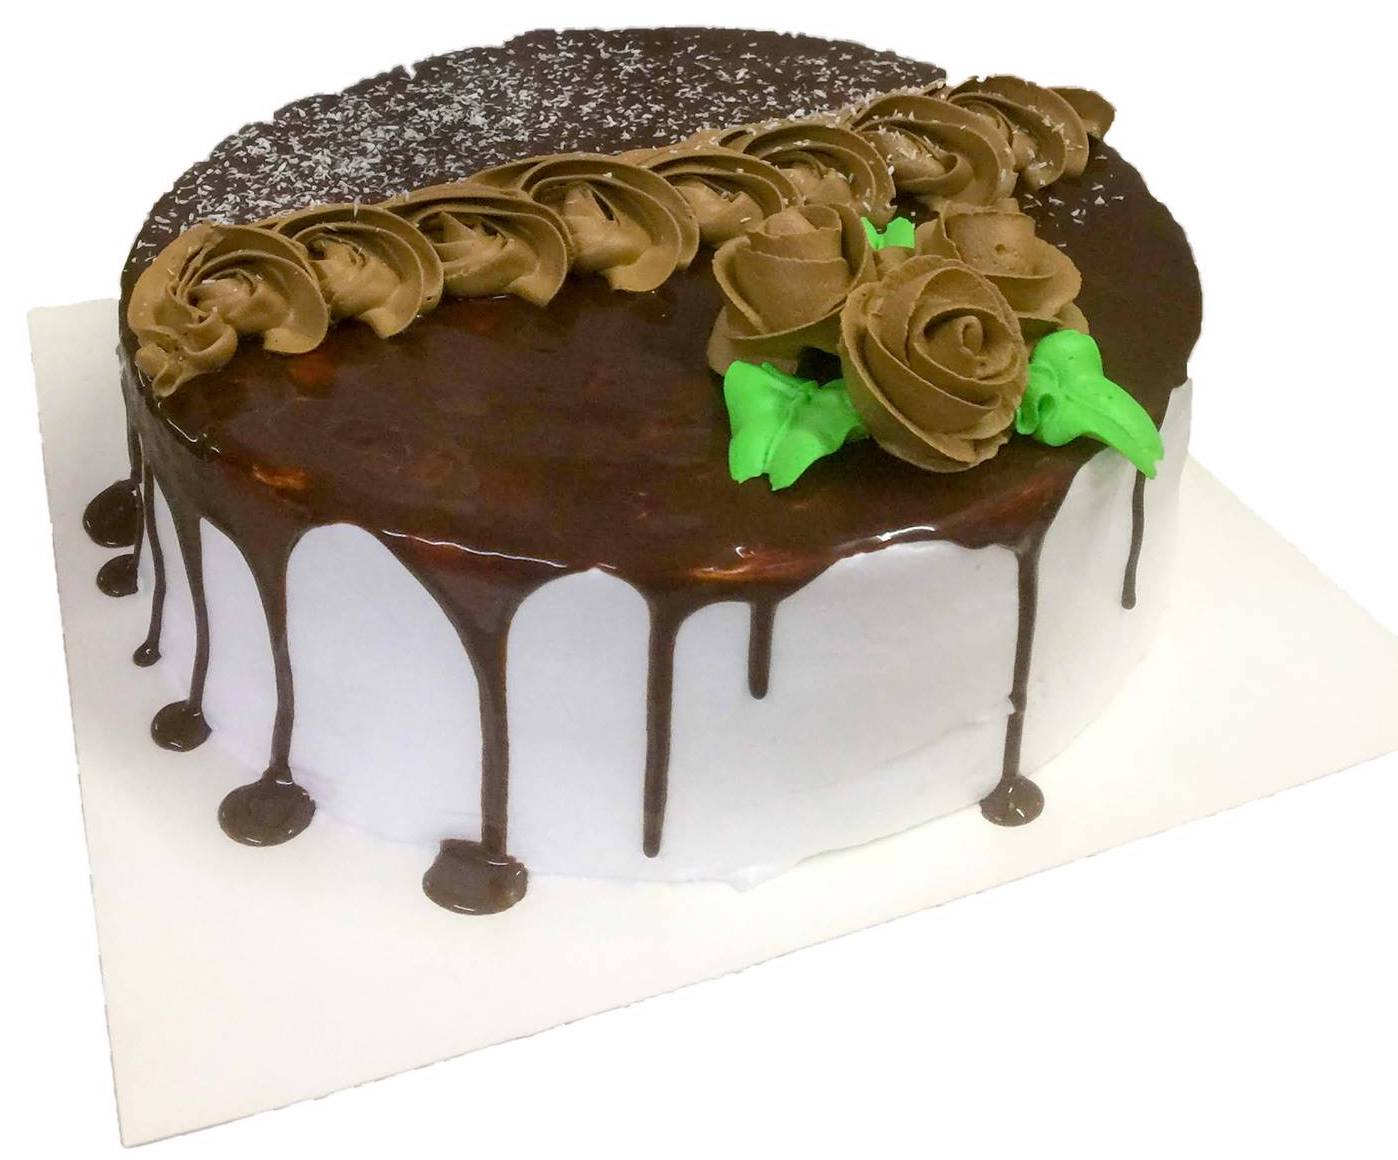 Chocolate drippy cake2